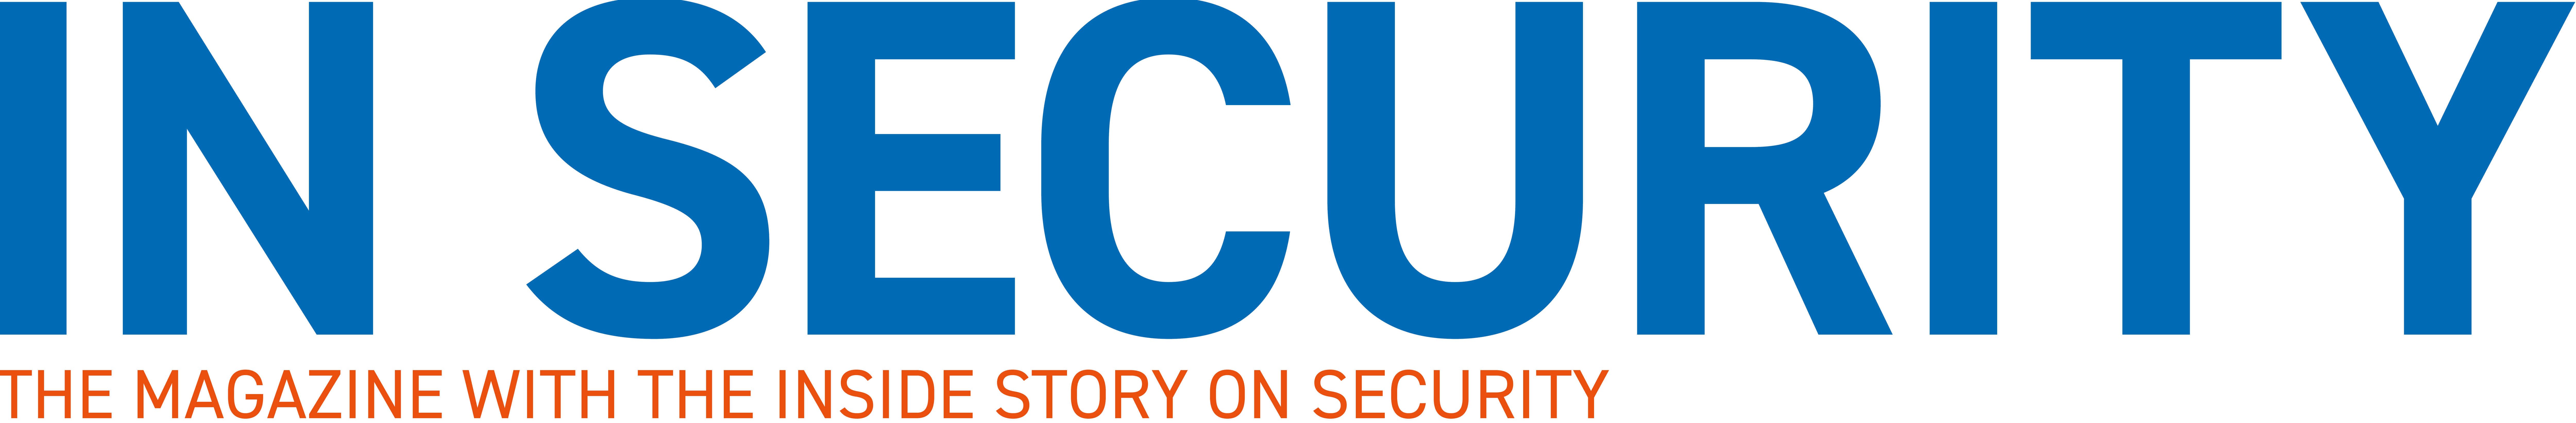 Video surveillance in retail logo